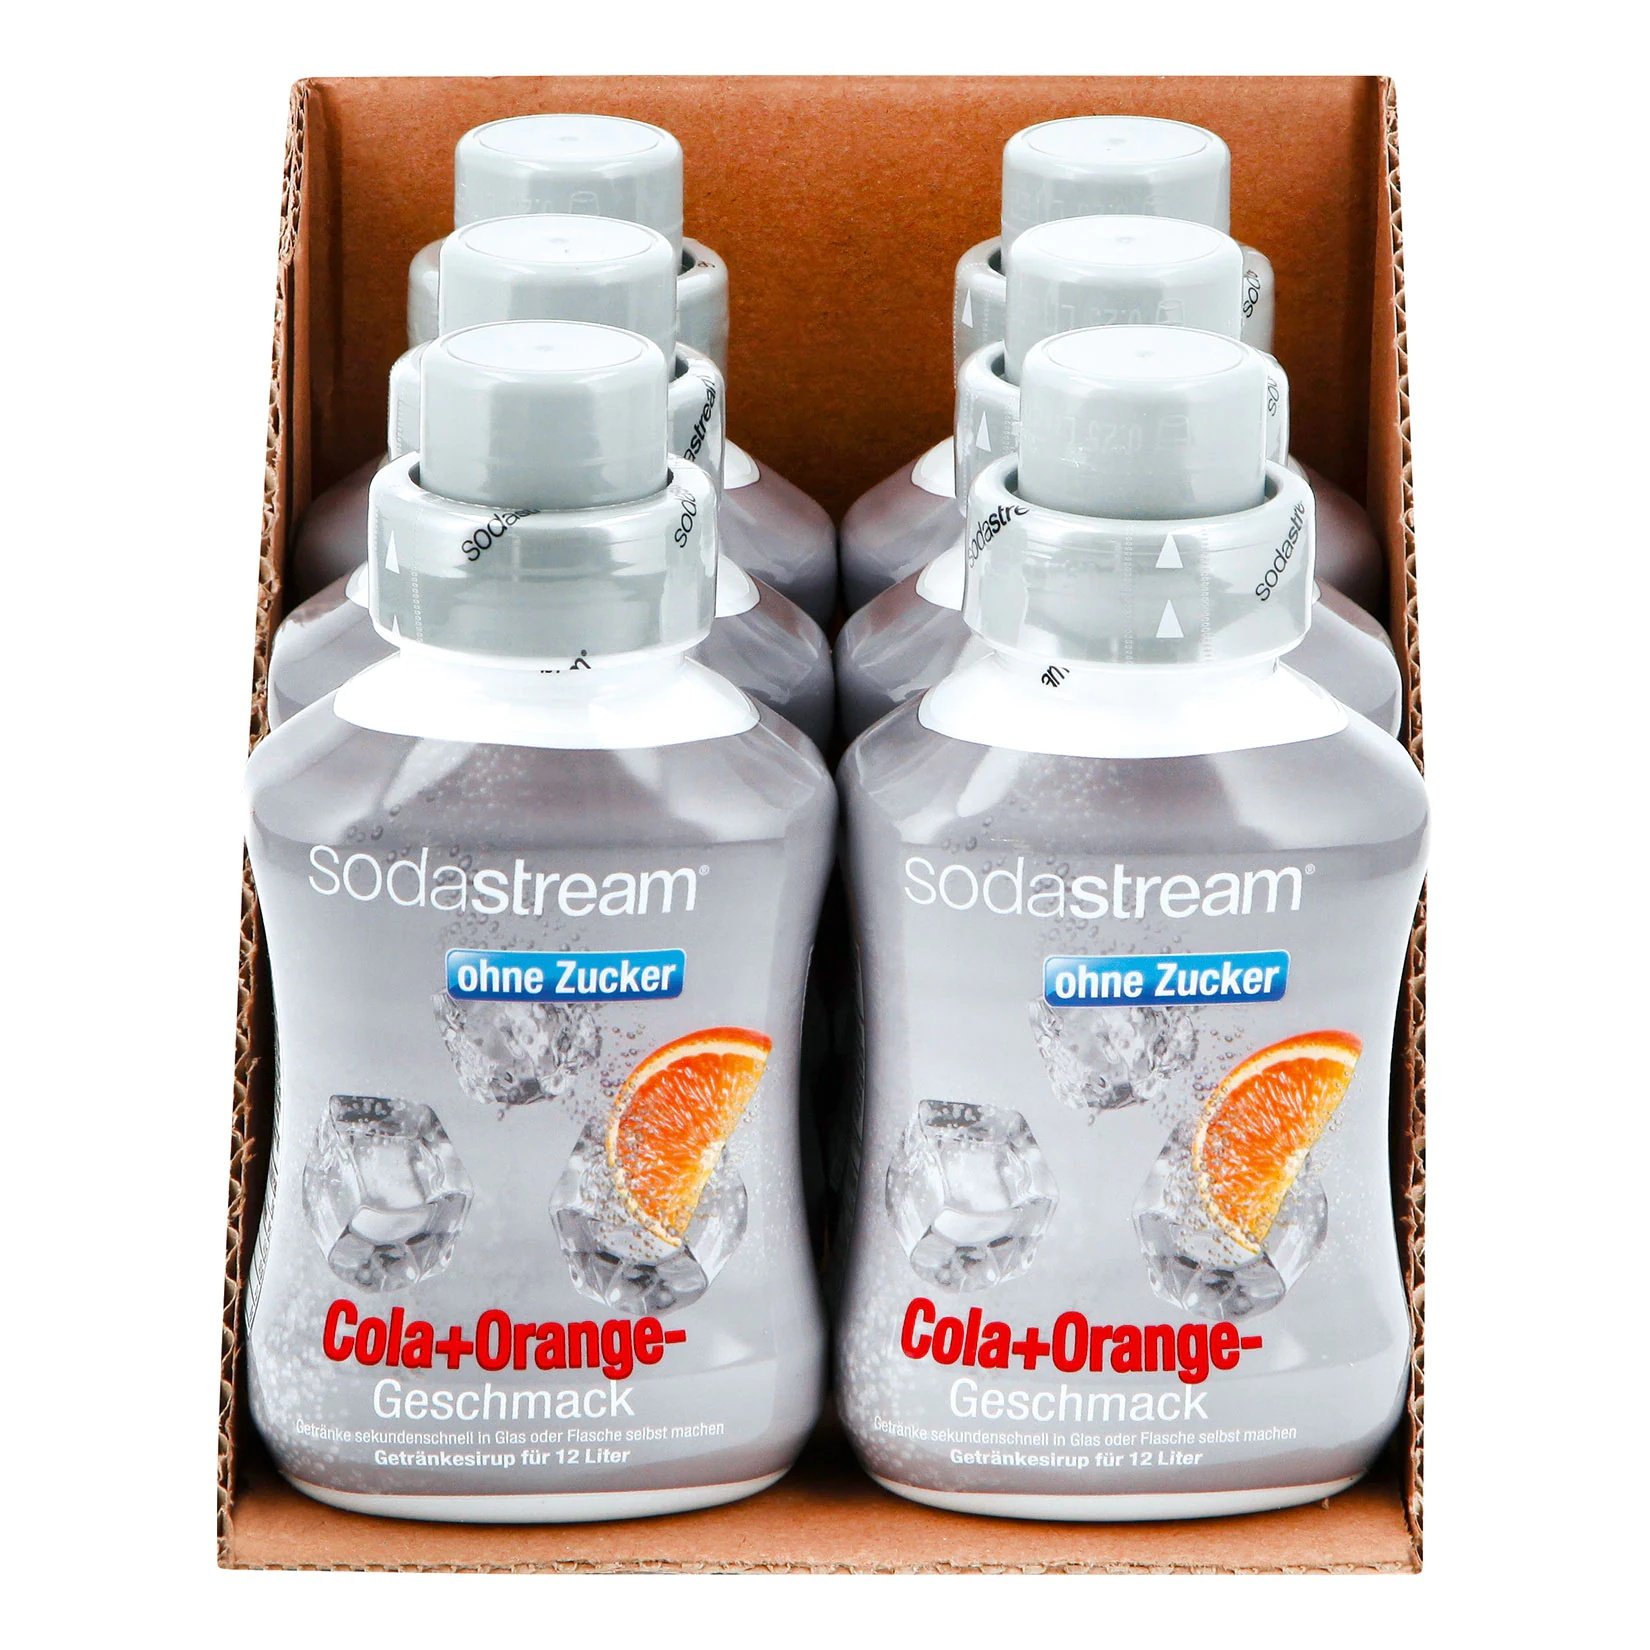 Sodastream Sirup Cola+Orange ohne Zucker 0,5 Liter, 6er Pack